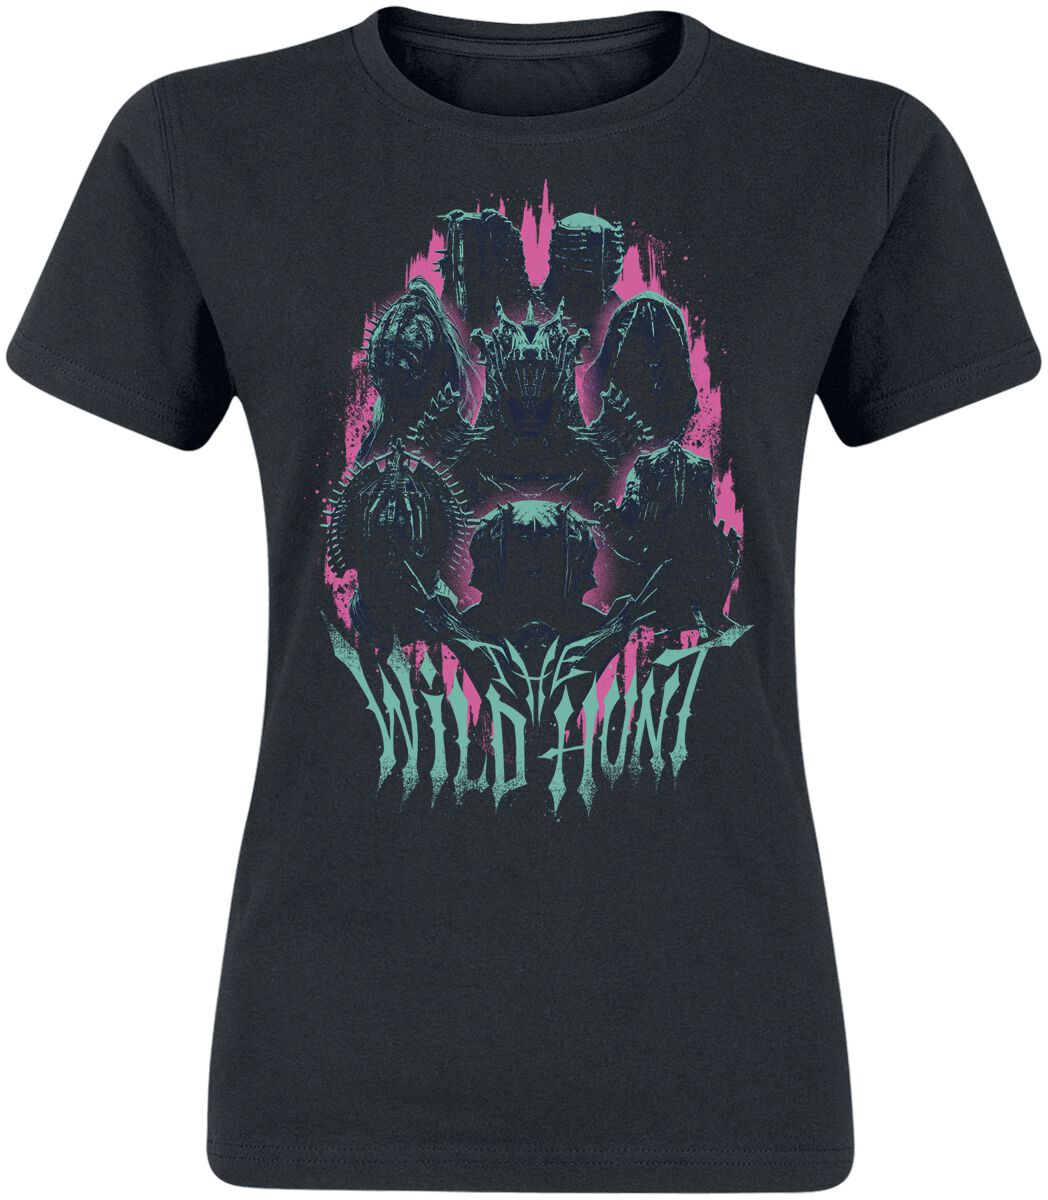 The Witcher T-Shirt - Season 3 - Wildhunt - S bis XXL - für Damen - Größe S - schwarz  - EMP exklusives Merchandise!